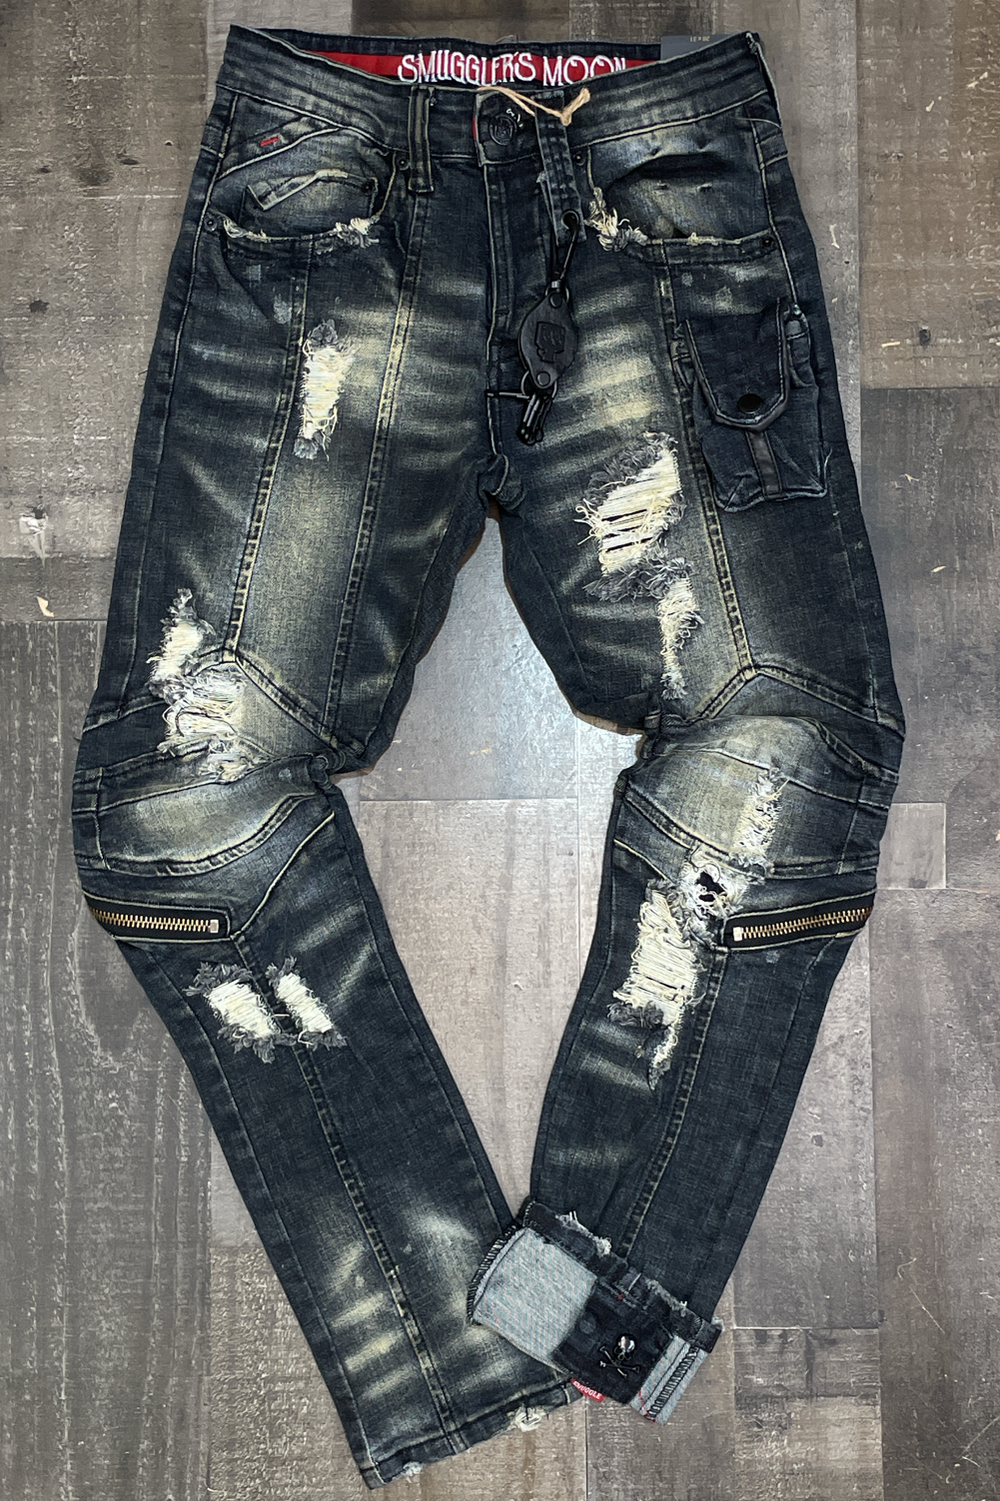 Smugglers- fashion jeans w/one pocket & shreds